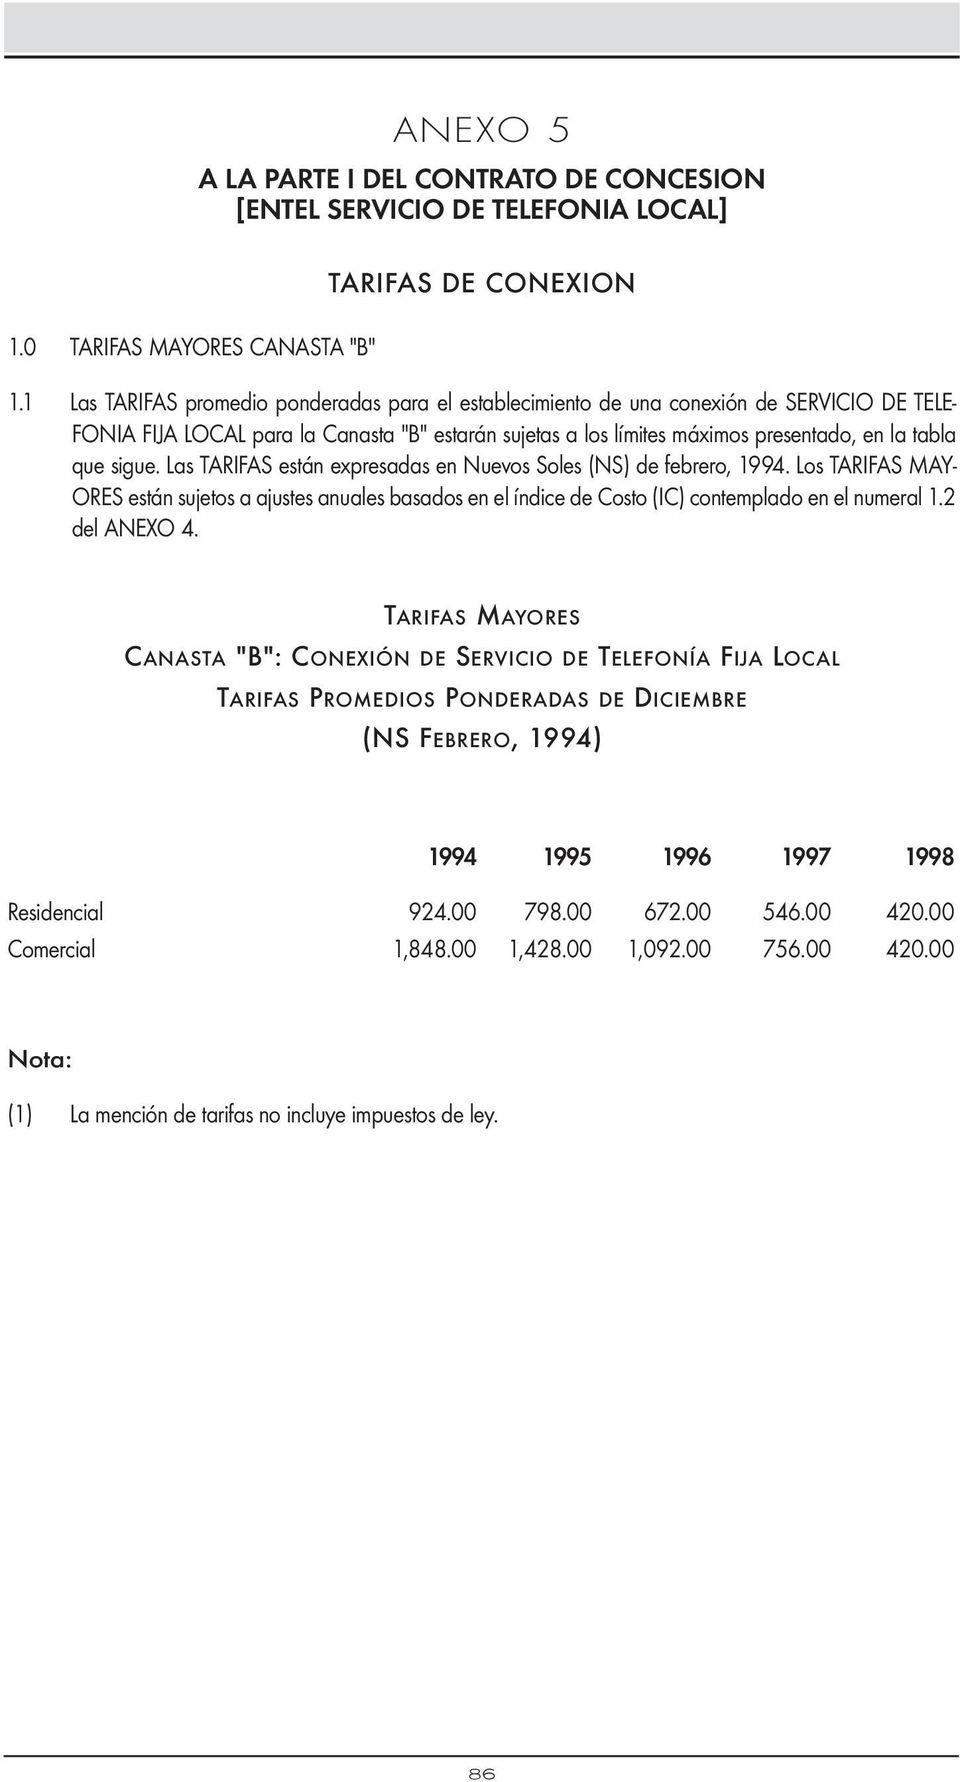 sigue. Las TARIFAS están expresadas en Nuevos Soles (NS) de febrero, 1994. Los TARIFAS MAY- ORES están sujetos a ajustes anuales basados en el índice de Costo (IC) contemplado en el numeral 1.